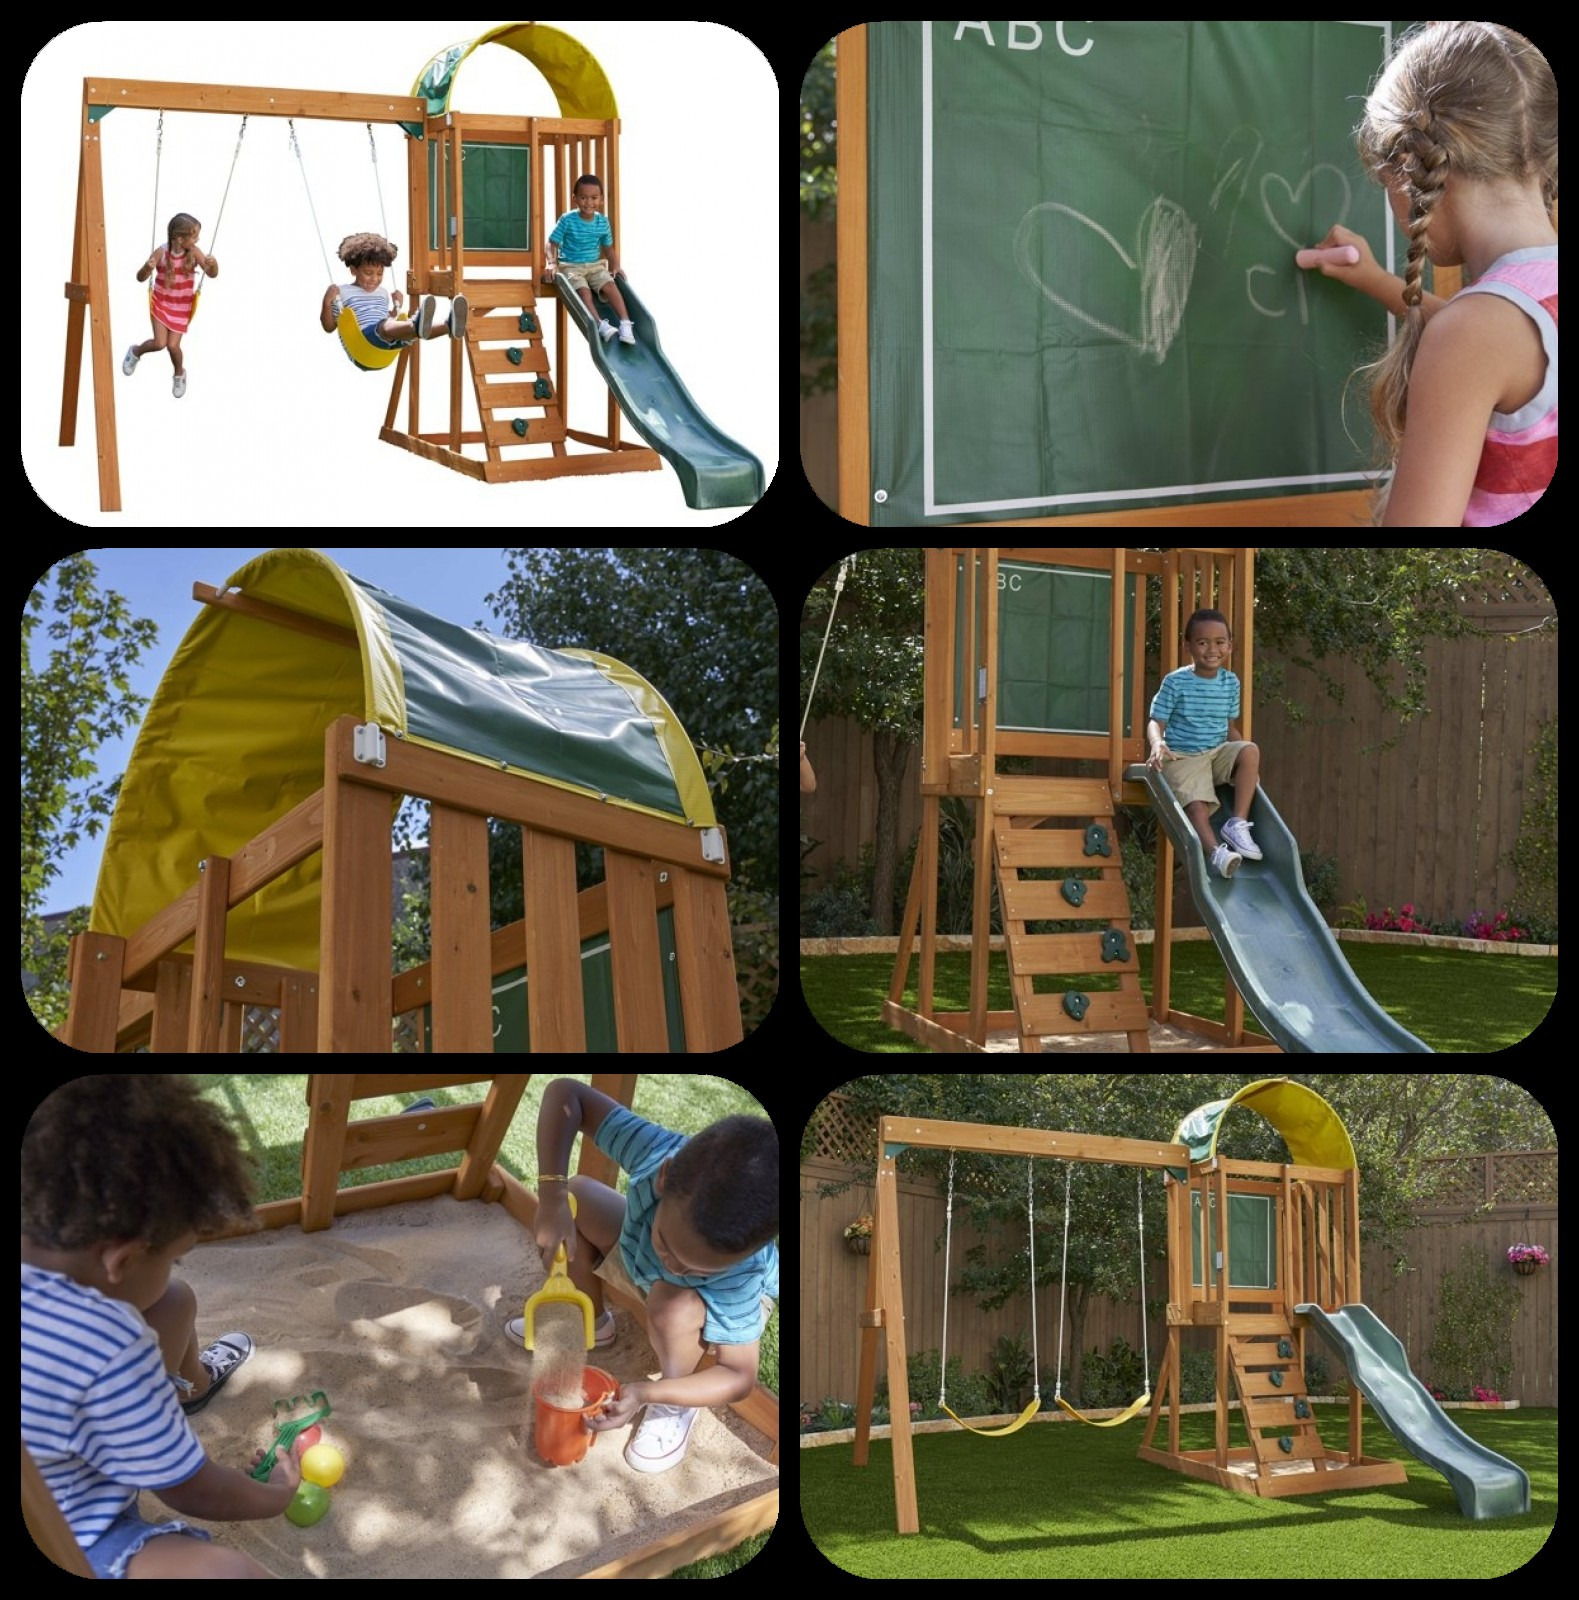 Cedar Wooden Swing Set Kids Boys Girls Fun Outdoor Backyard Slide Sandbox Play